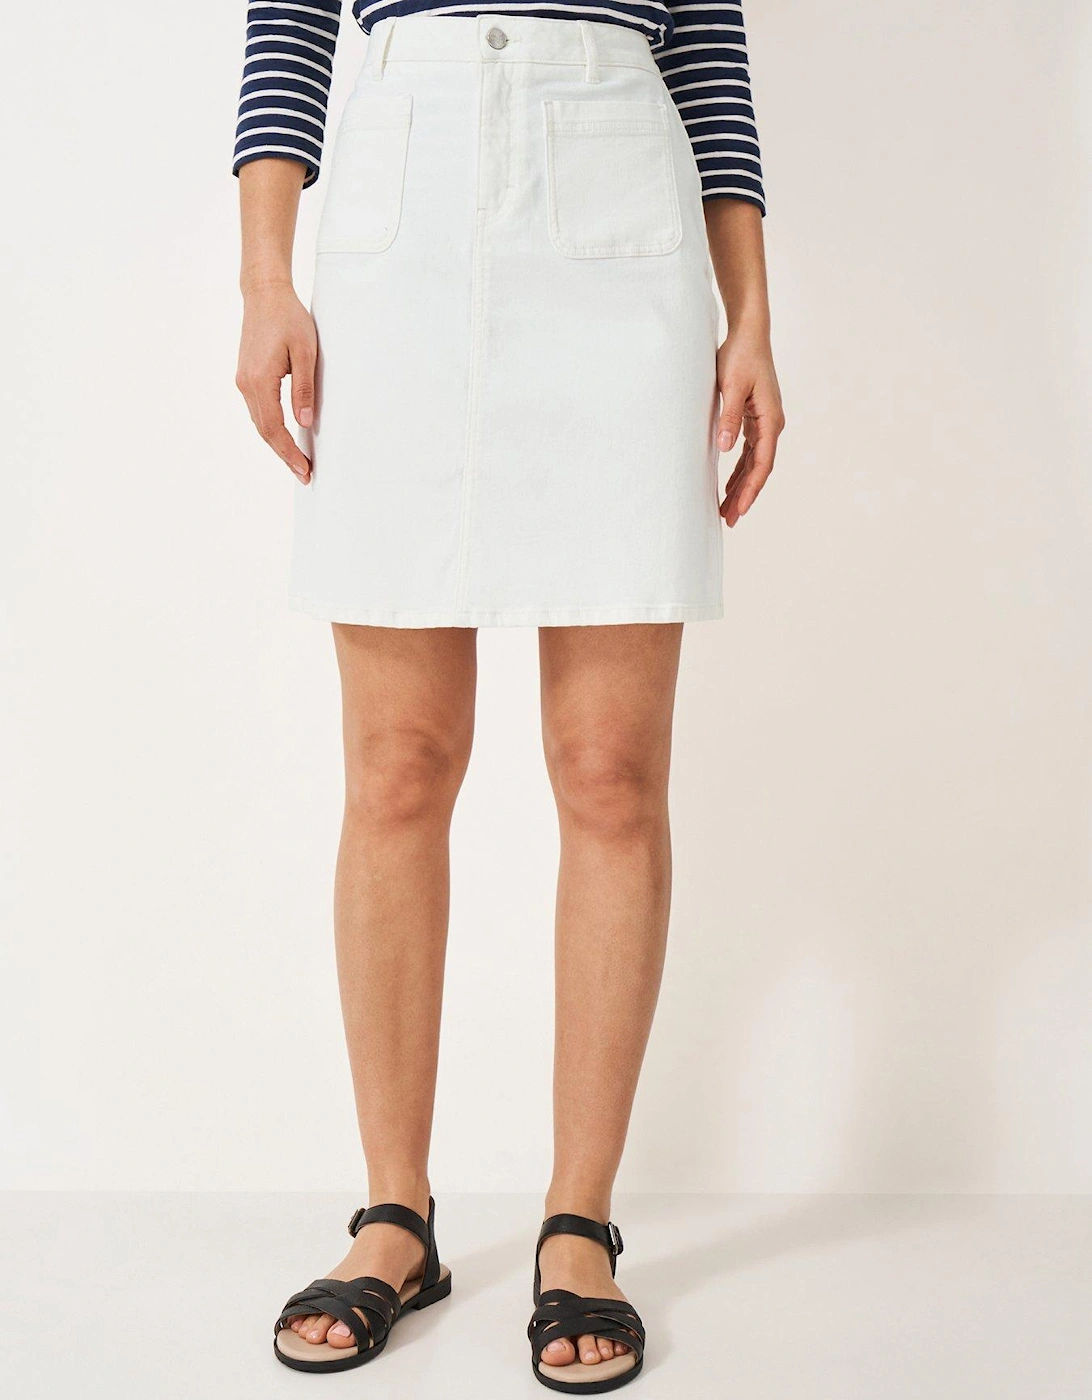 Analee short denim skirt - White, 2 of 1